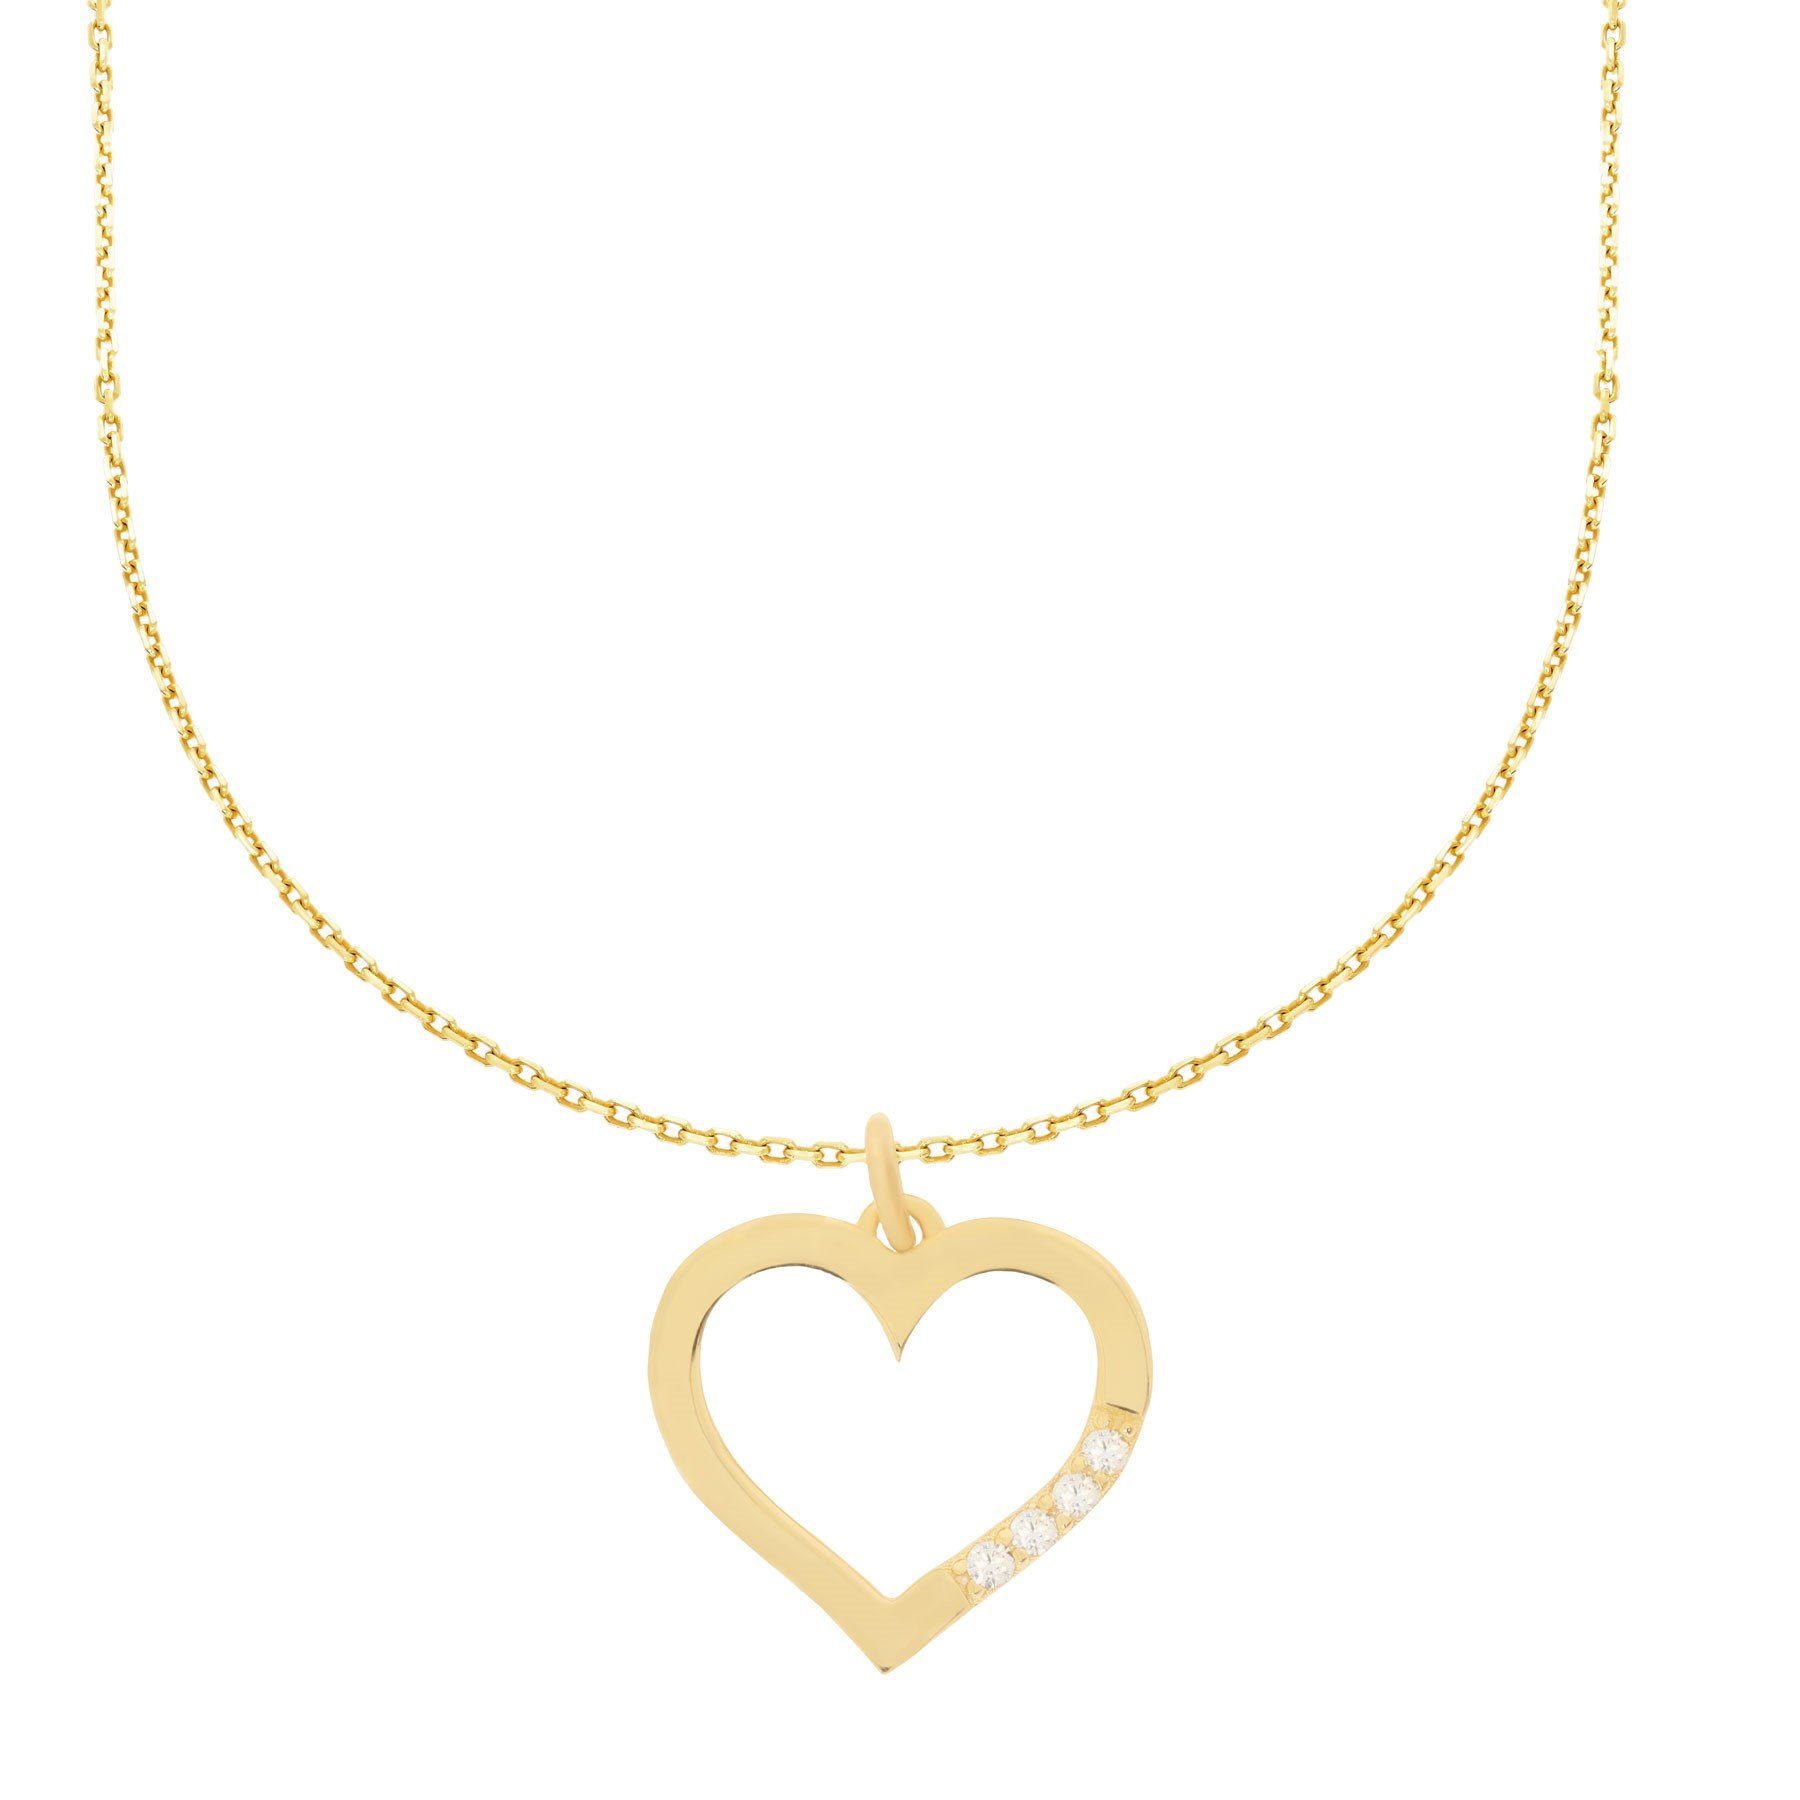 Damen Schmuck Stella-Jewellery Kette mit Anhänger 585er Gold Collierkette mit Herz Anhänger Zirkonia (inkl. Etui), Collierkette 